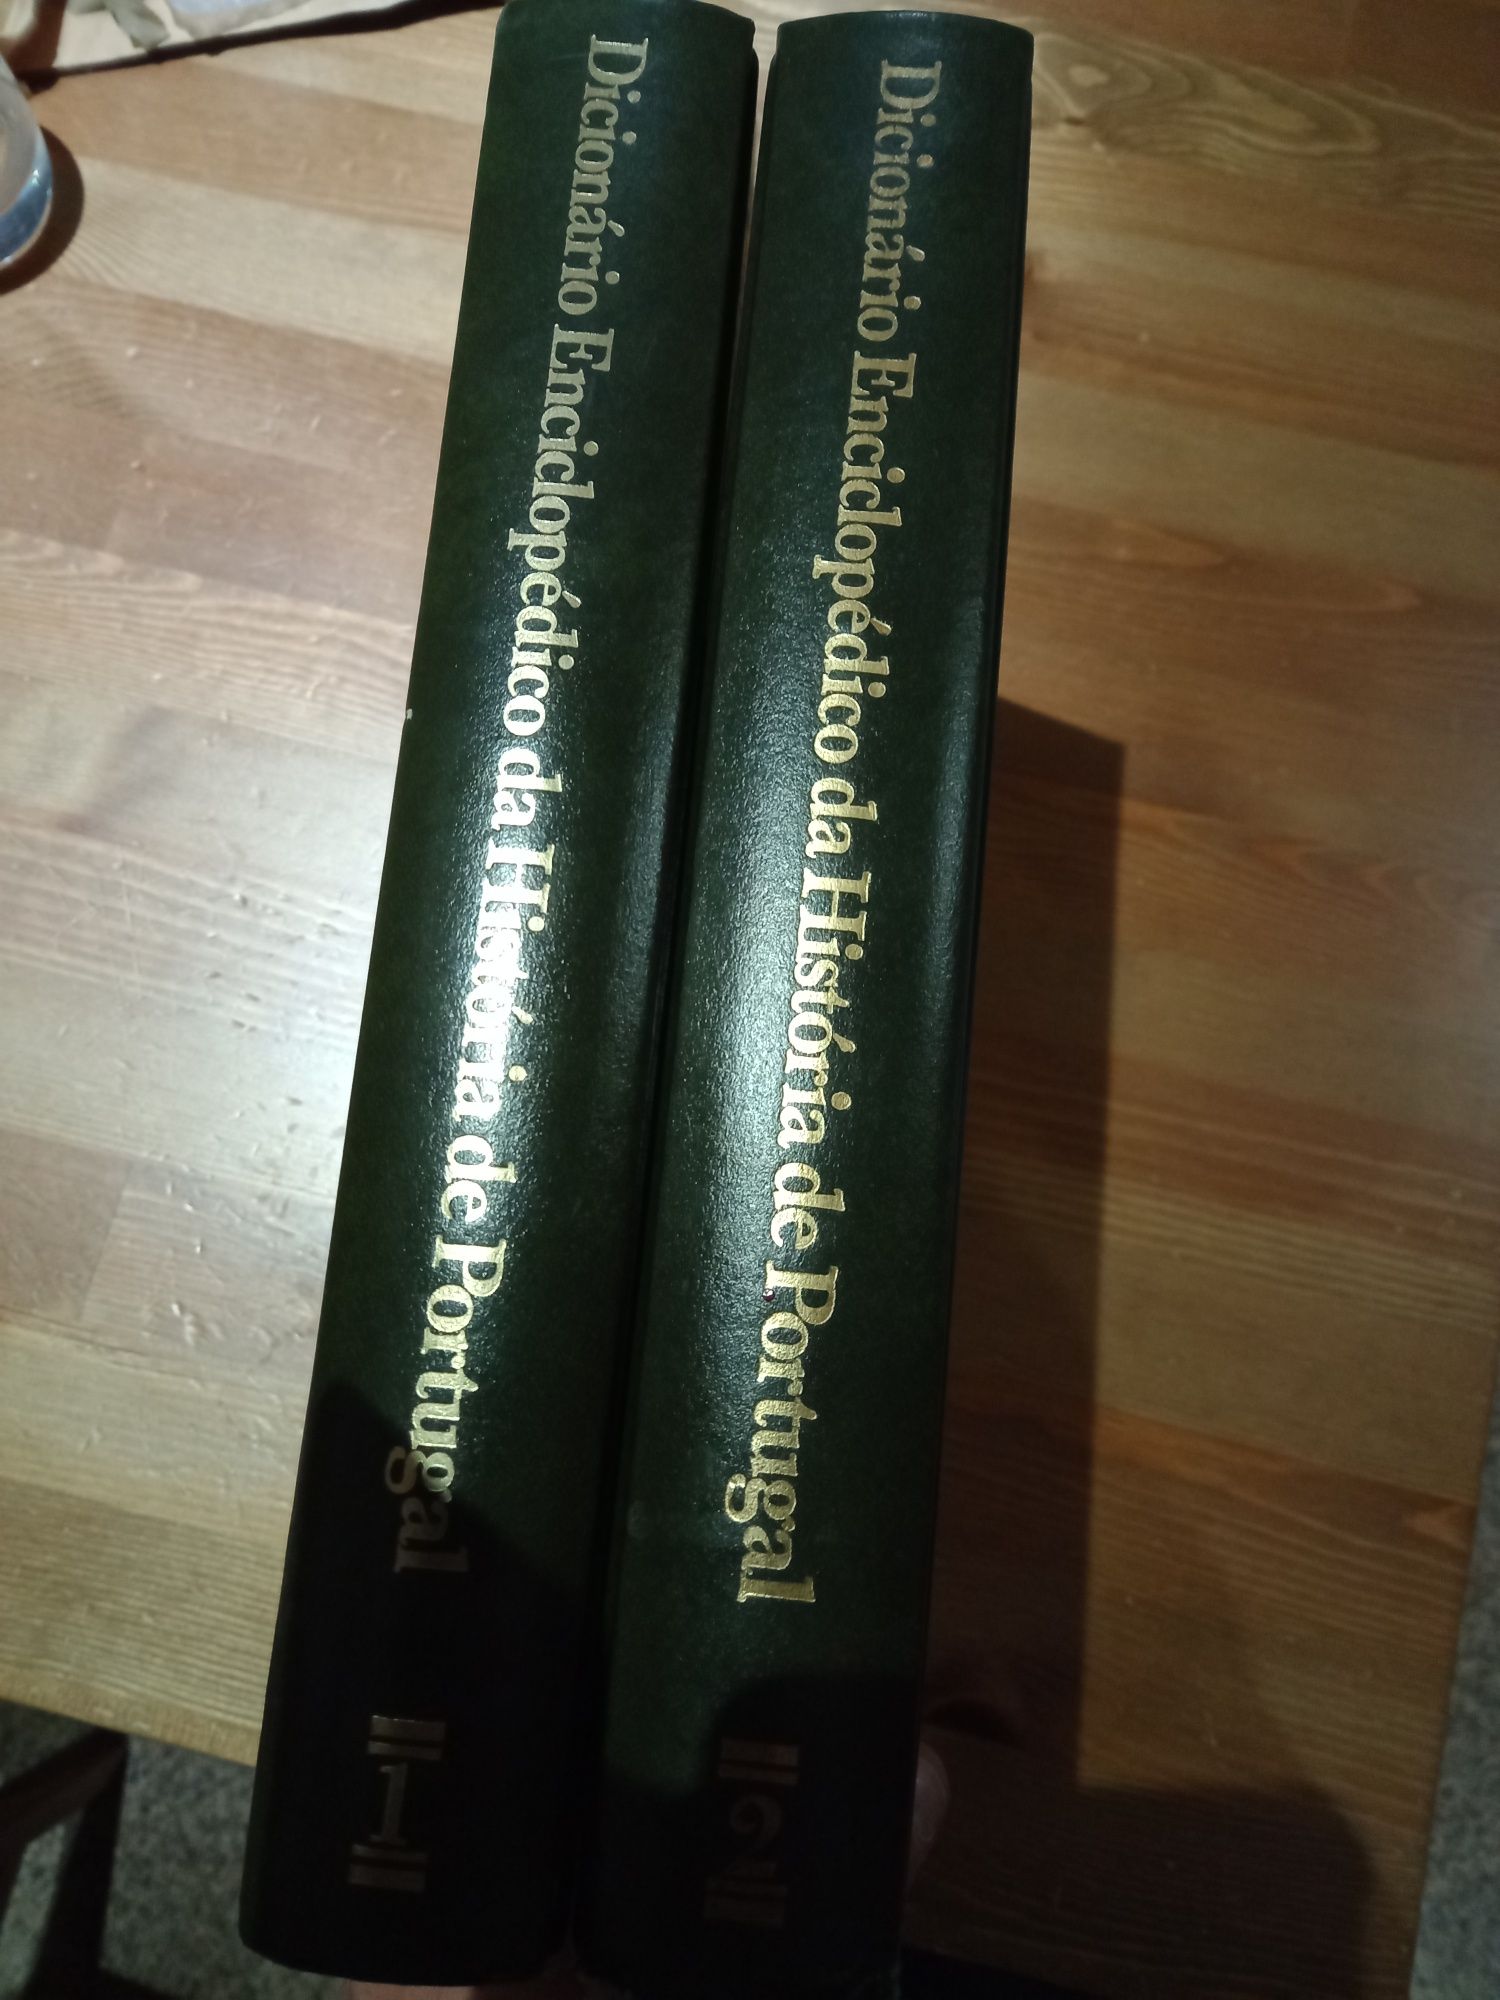 2 volumes Diocionario Enciclopedico de Portugal